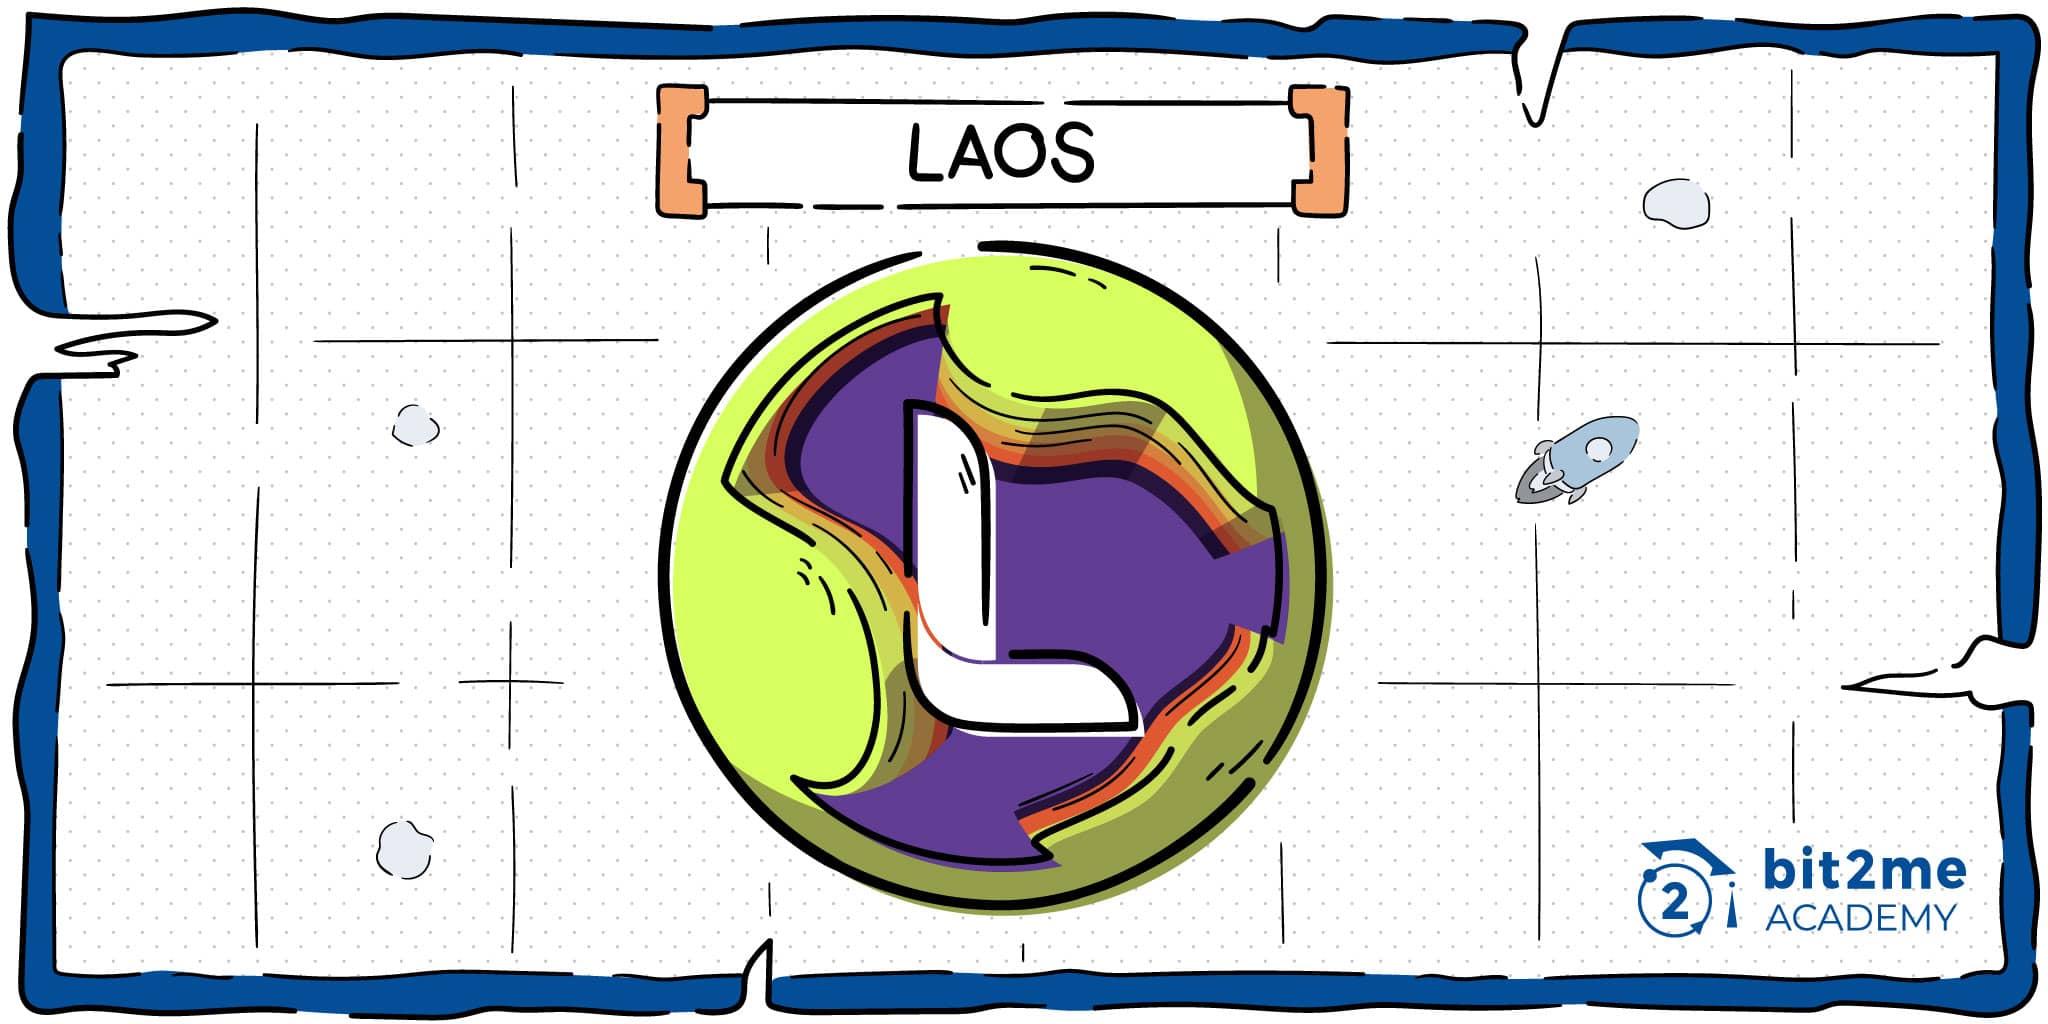 ¿Qué es LAOS?